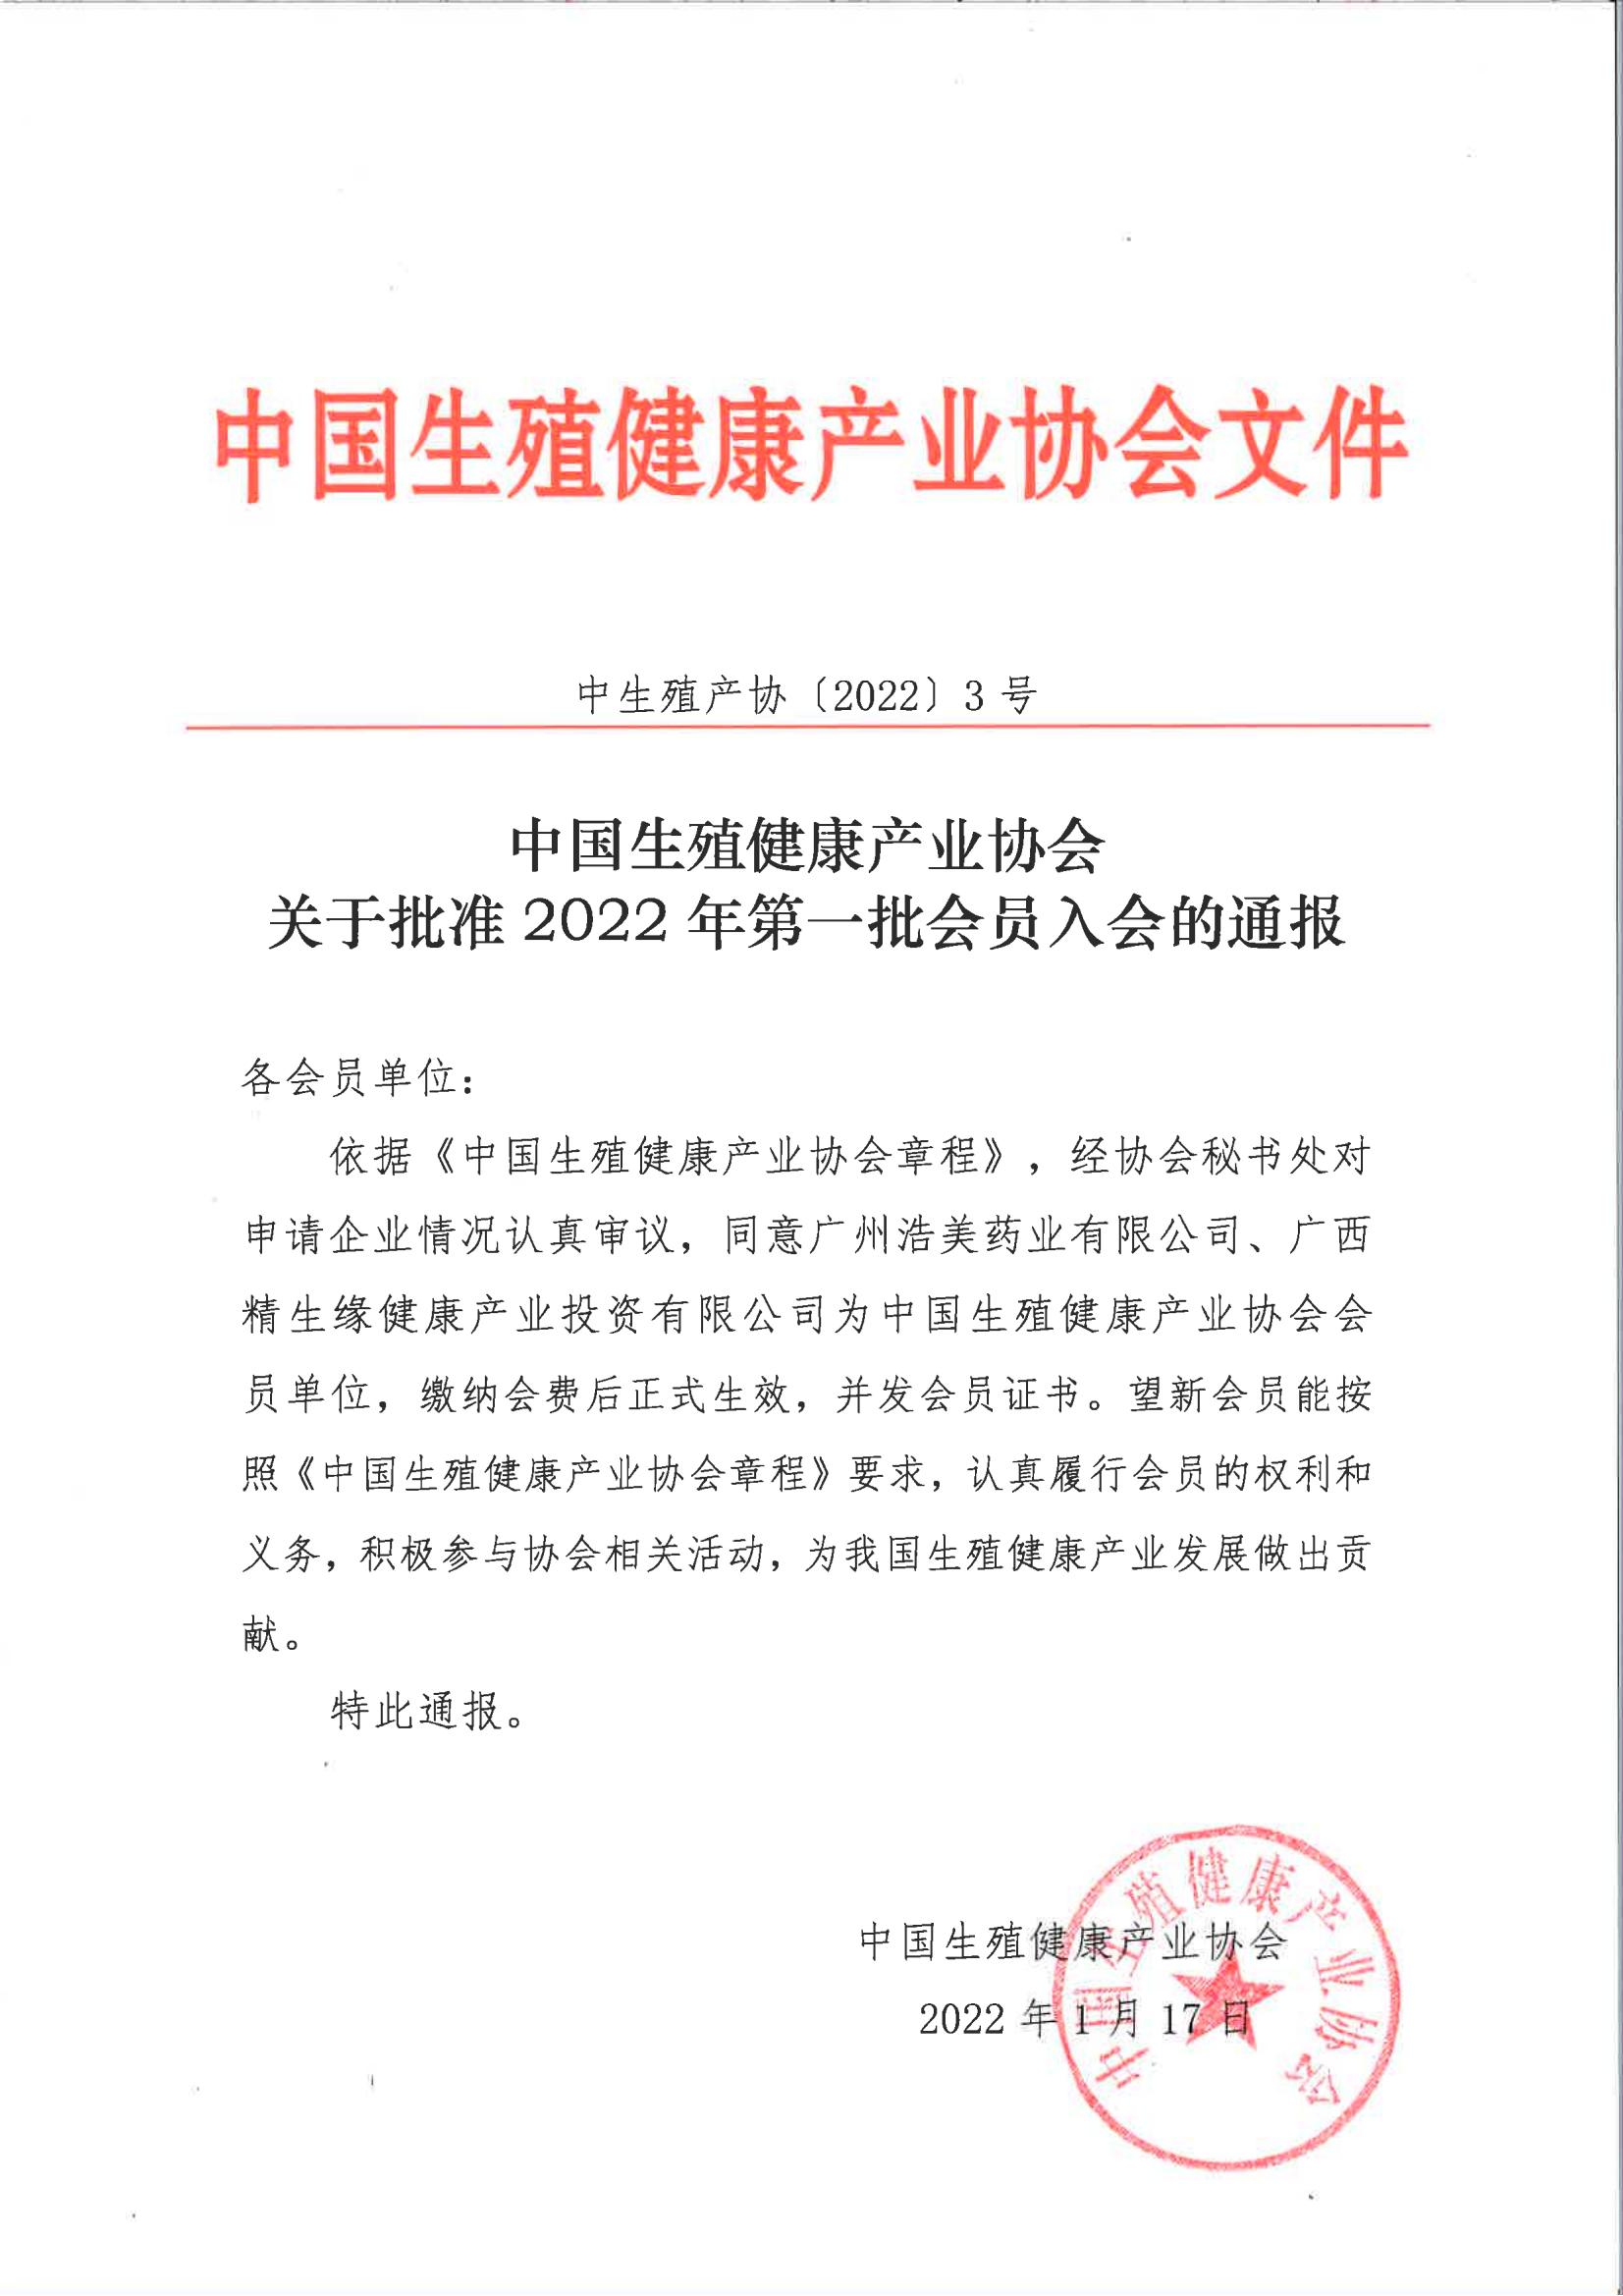 中國生殖健康產業協會關于批準2022年第一批會員單位的通報